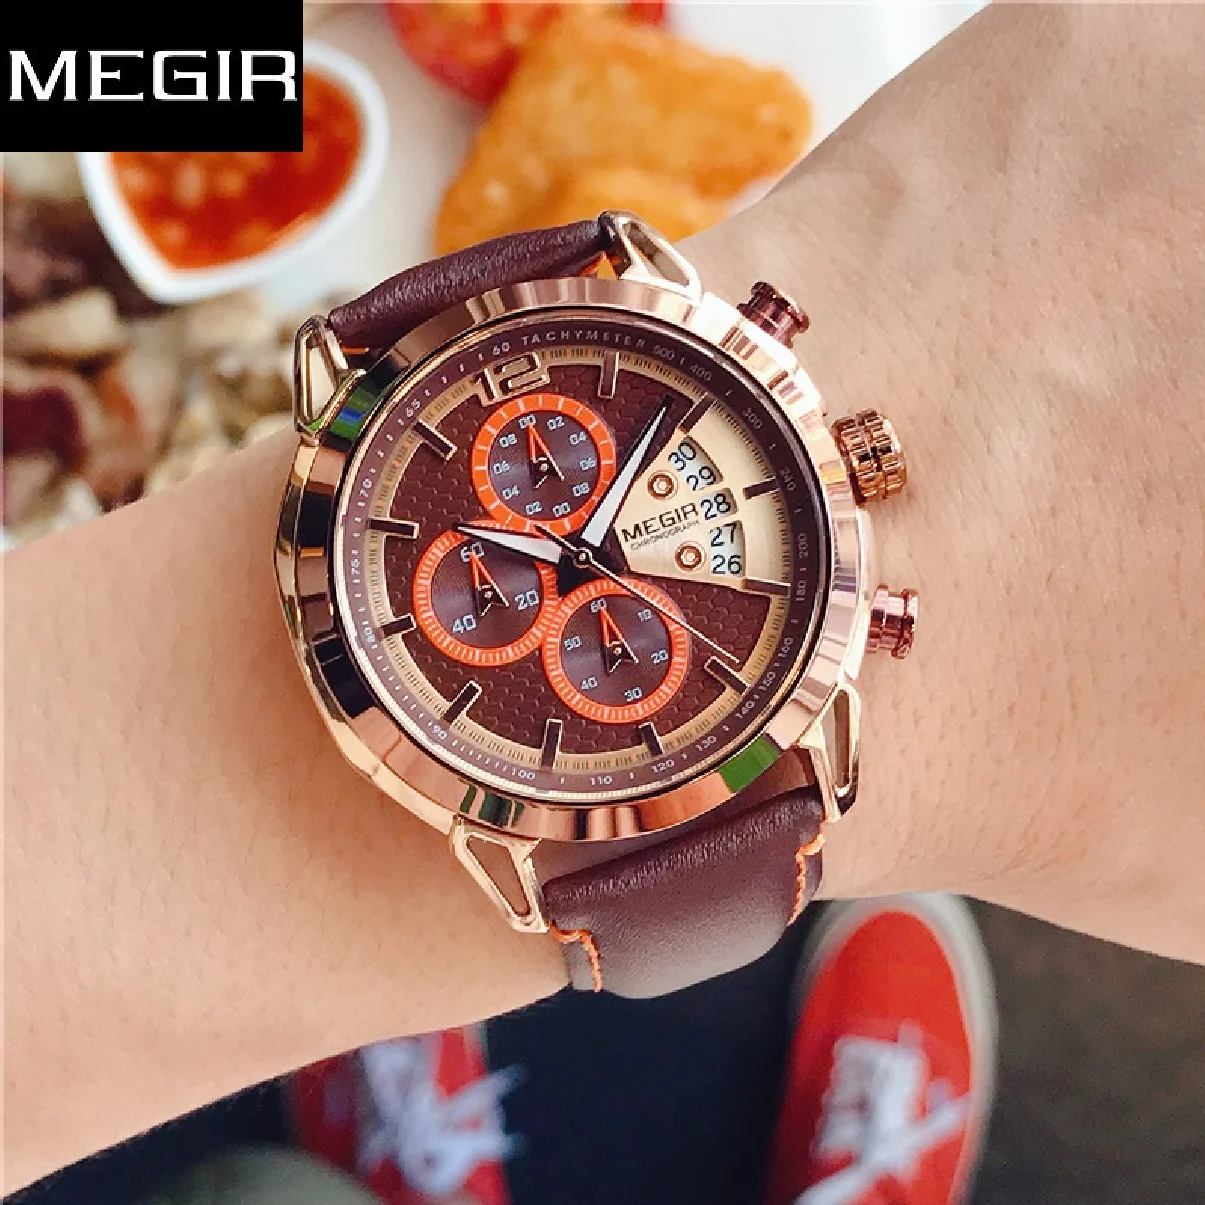 

Часы MEGIR Мужские кварцевые с хронографом, креативные модные спортивные армейские, в стиле милитари, с кожаным ремешком, с датой